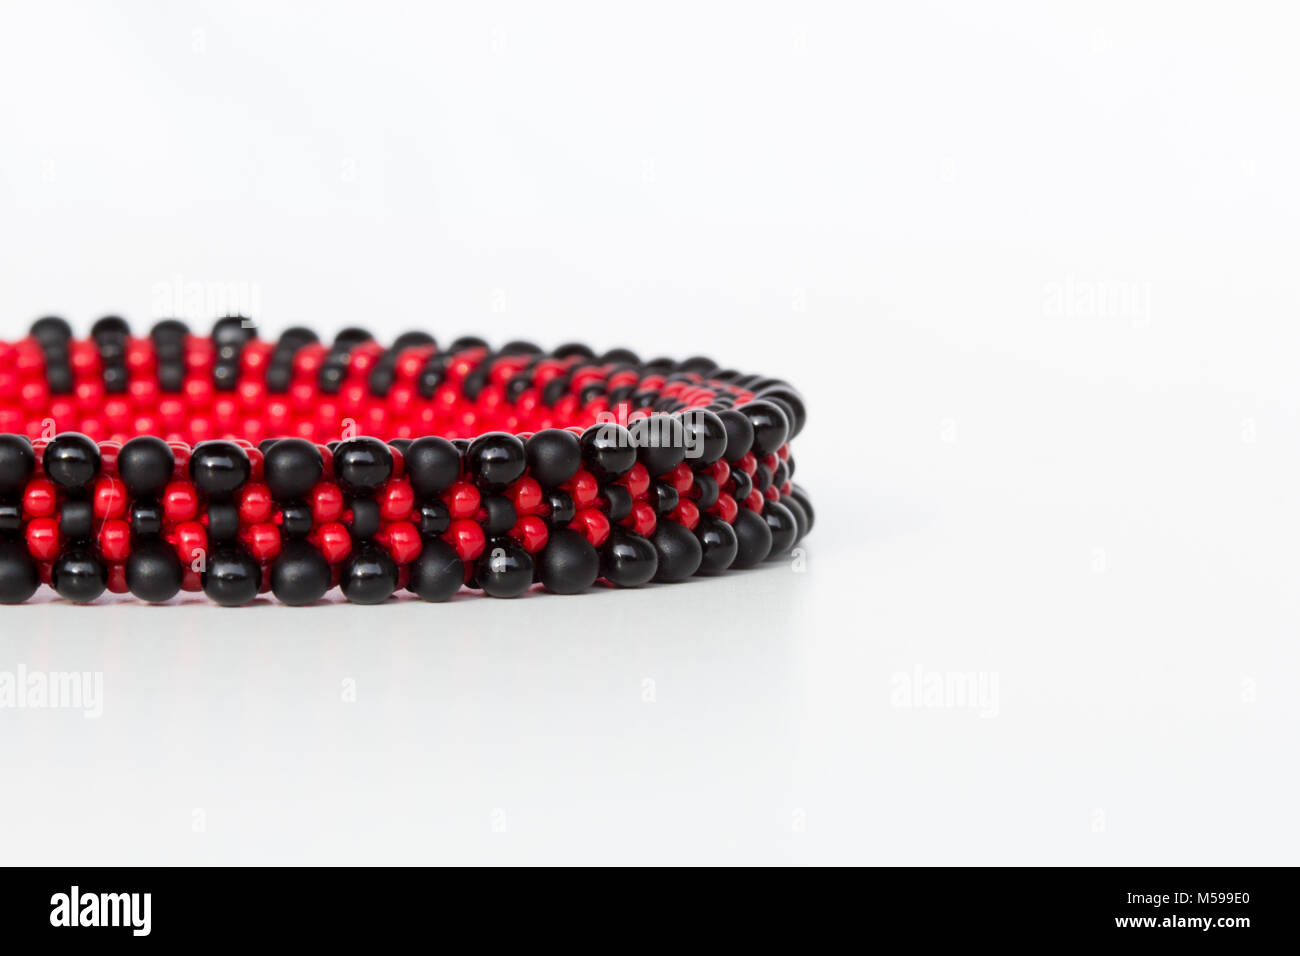 Noir et rouge bracelet en crochet en cordon sur fond blanc Banque D'Images